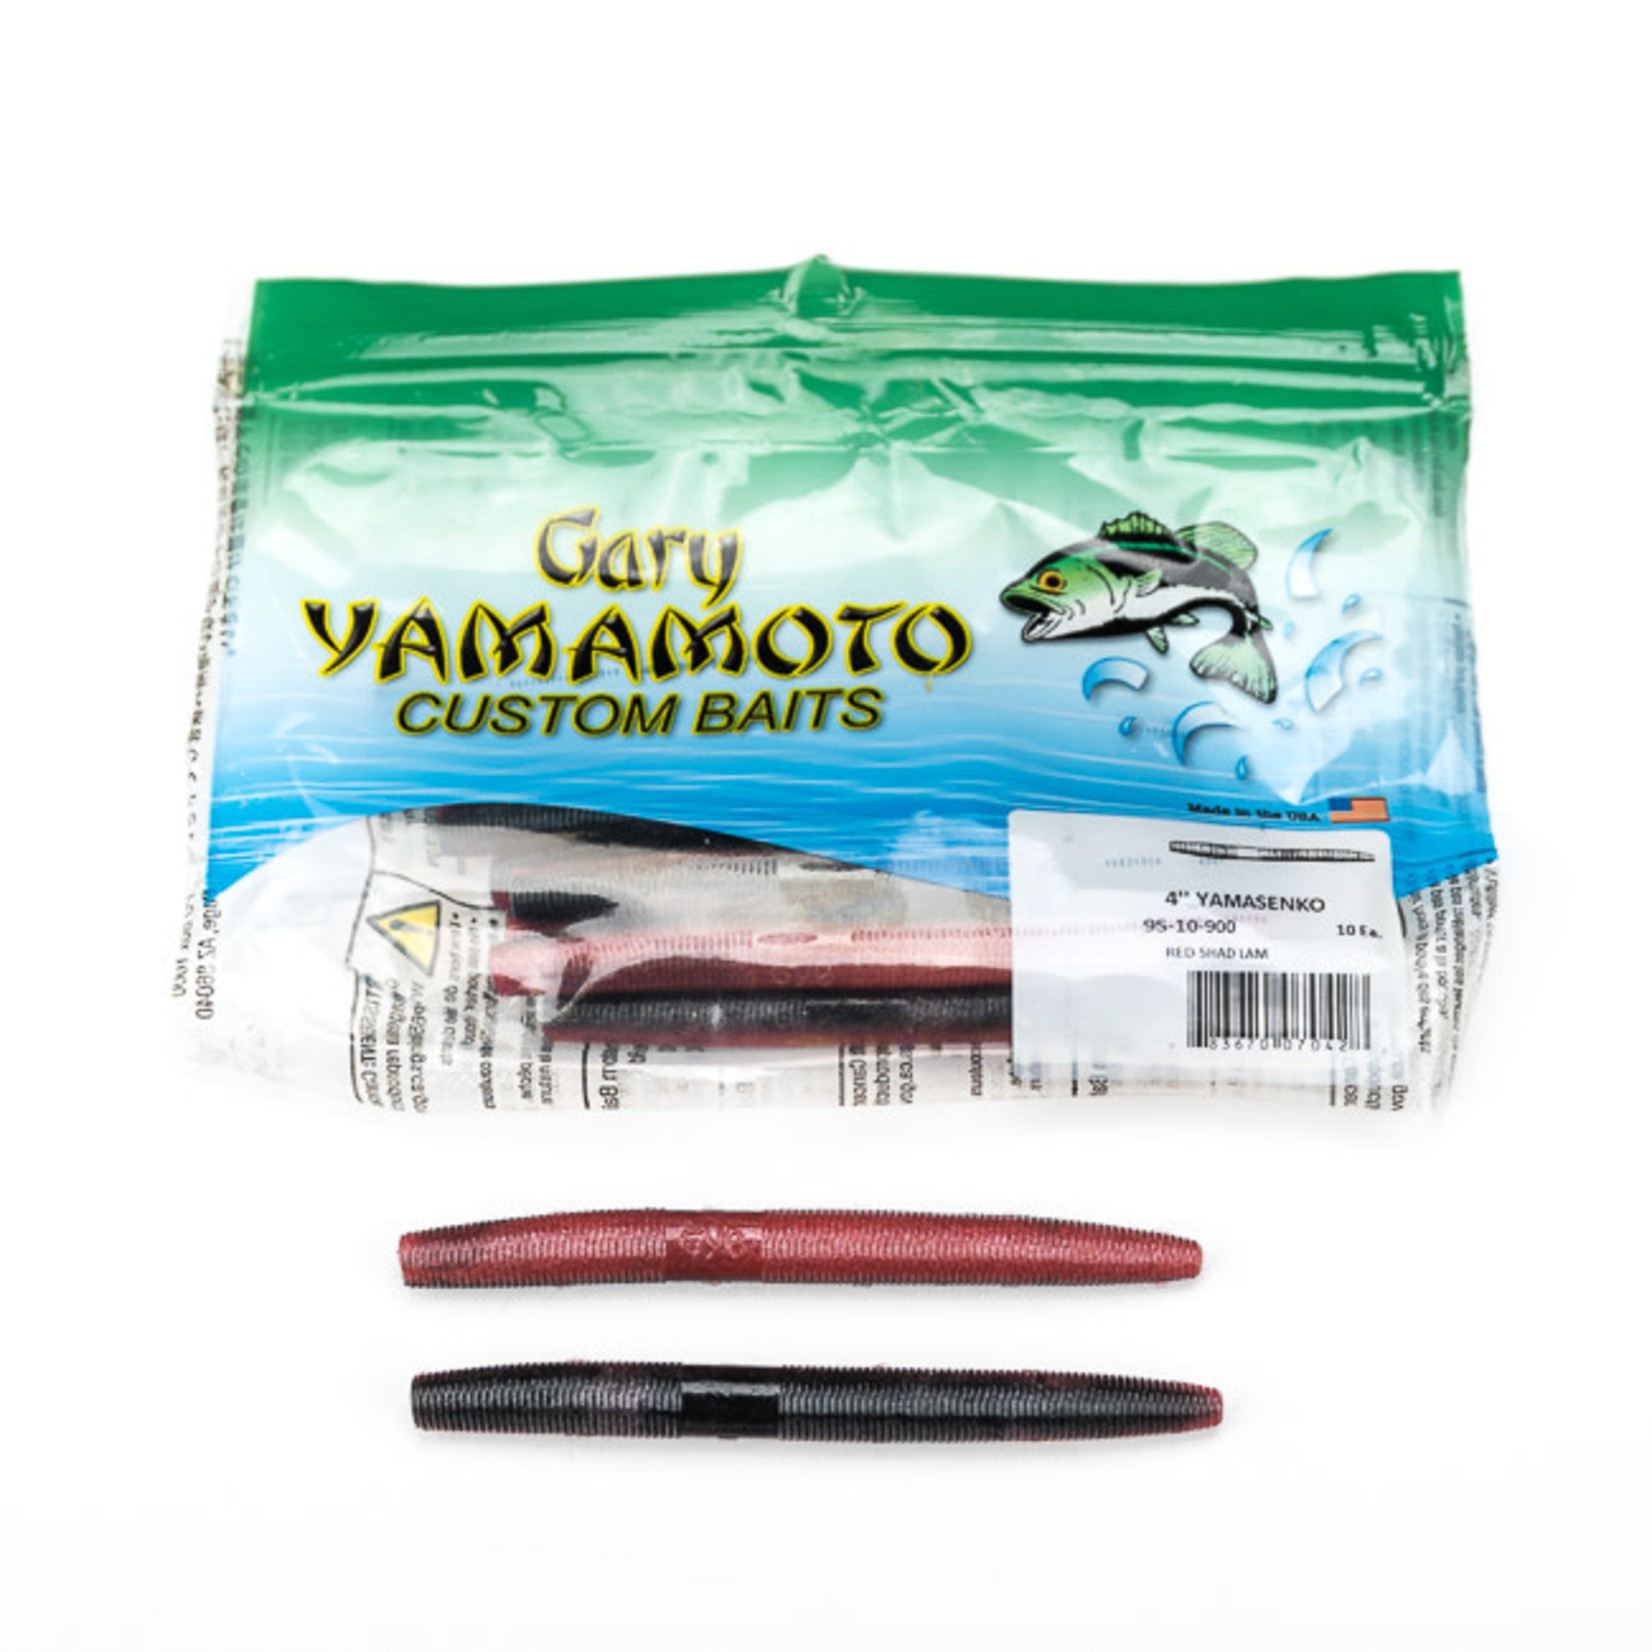 Yamamoto Baits Yamamoto 9S-10-900 Senko Worm, 4